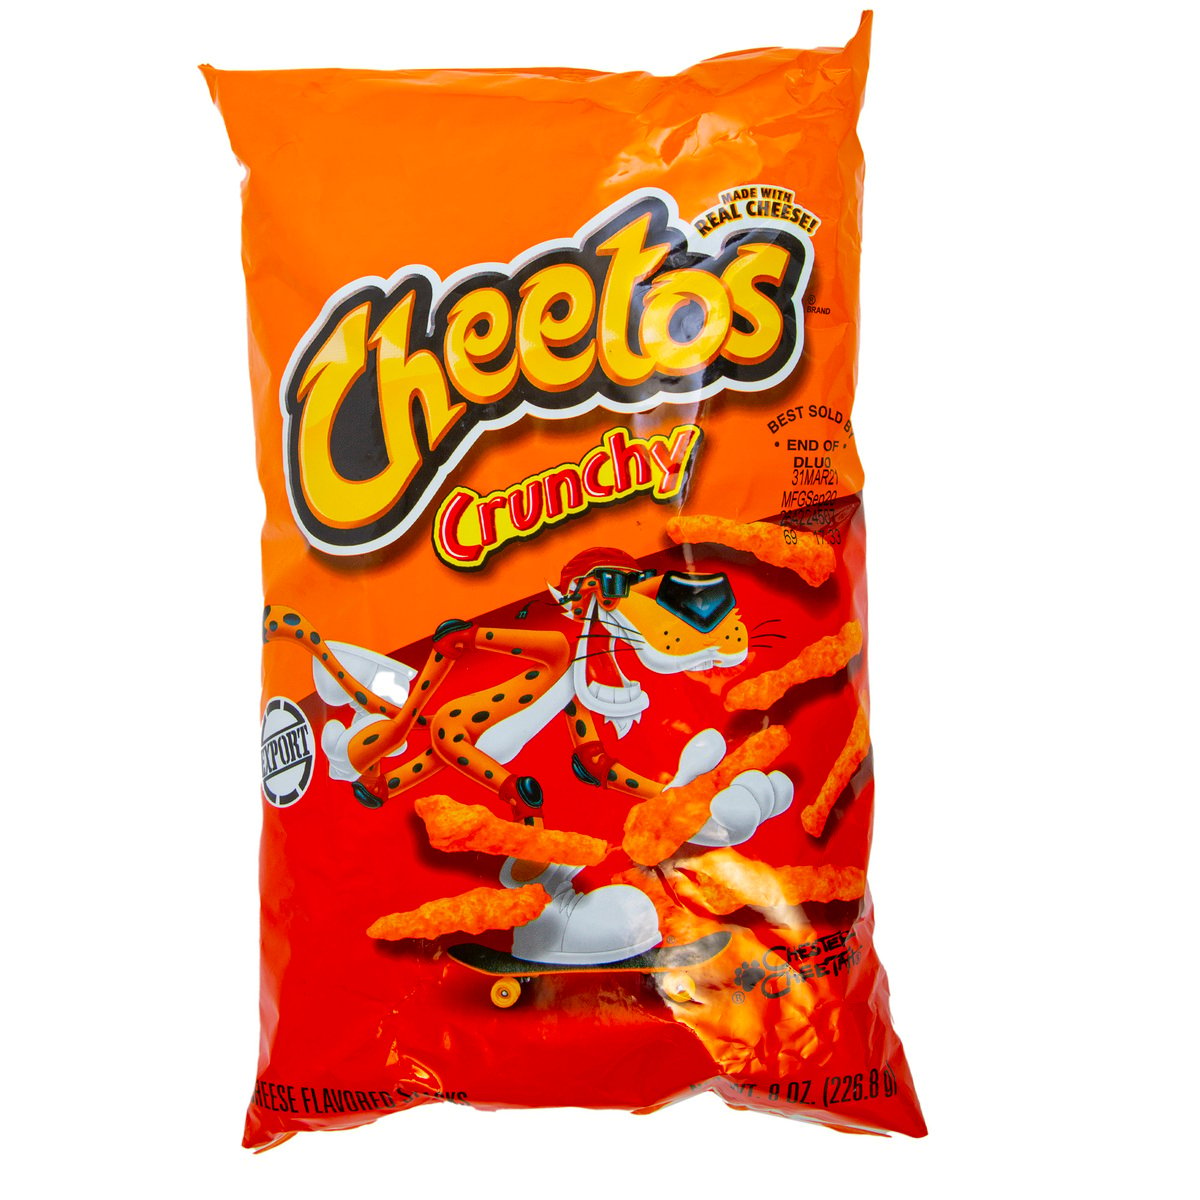 Cheetos Crunchy Cheese Flavoured Snacks 226.8 g